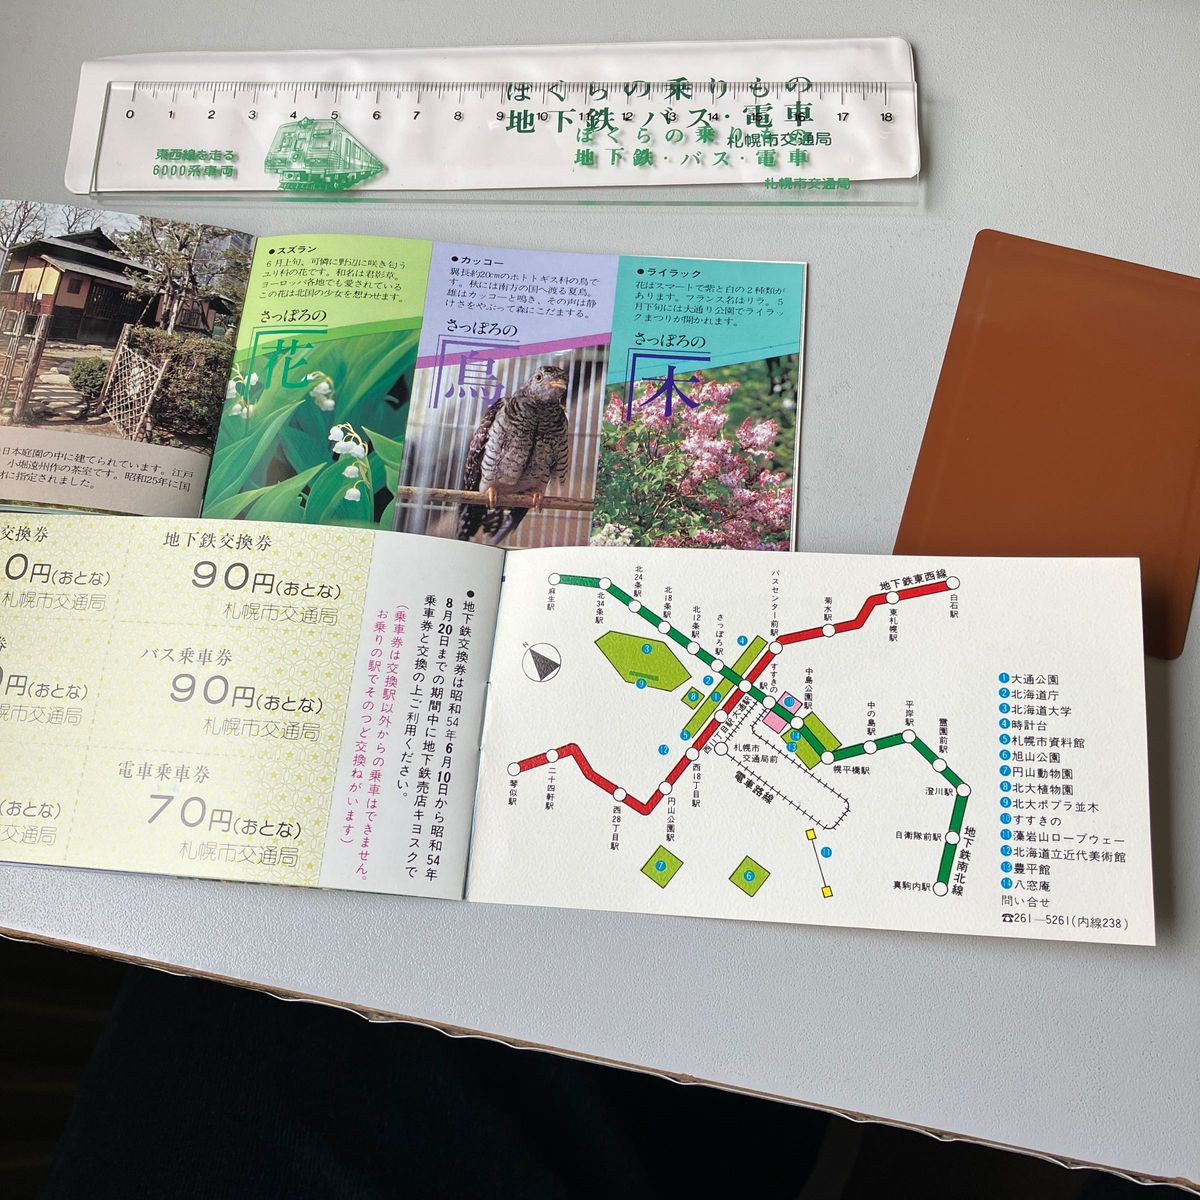 地下鉄コレクションで1979札幌夏の名所めぐり記念乗車券2冊に60年札幌雪祭り一日乗車券と記念定規です。断捨離出品します。